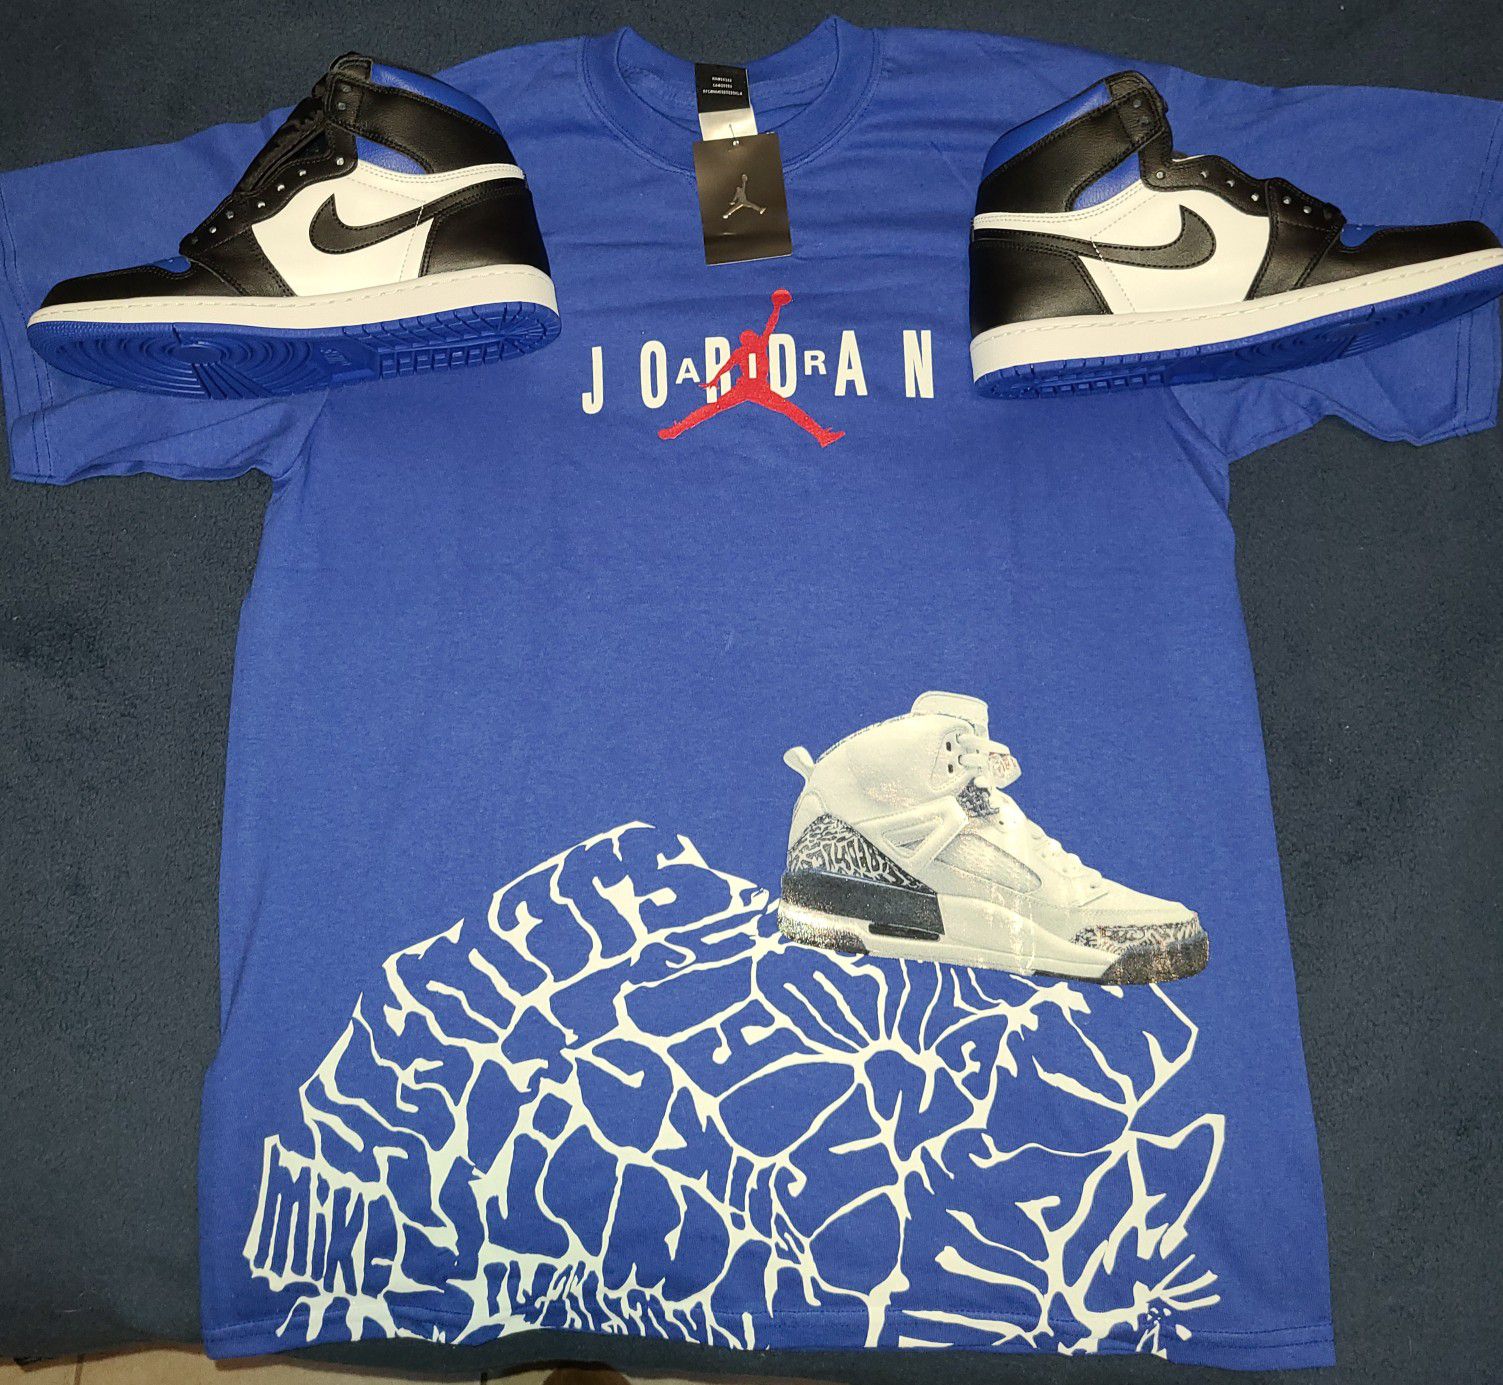 Jordan retro og royal toe size 10 with the og t-shirt size L